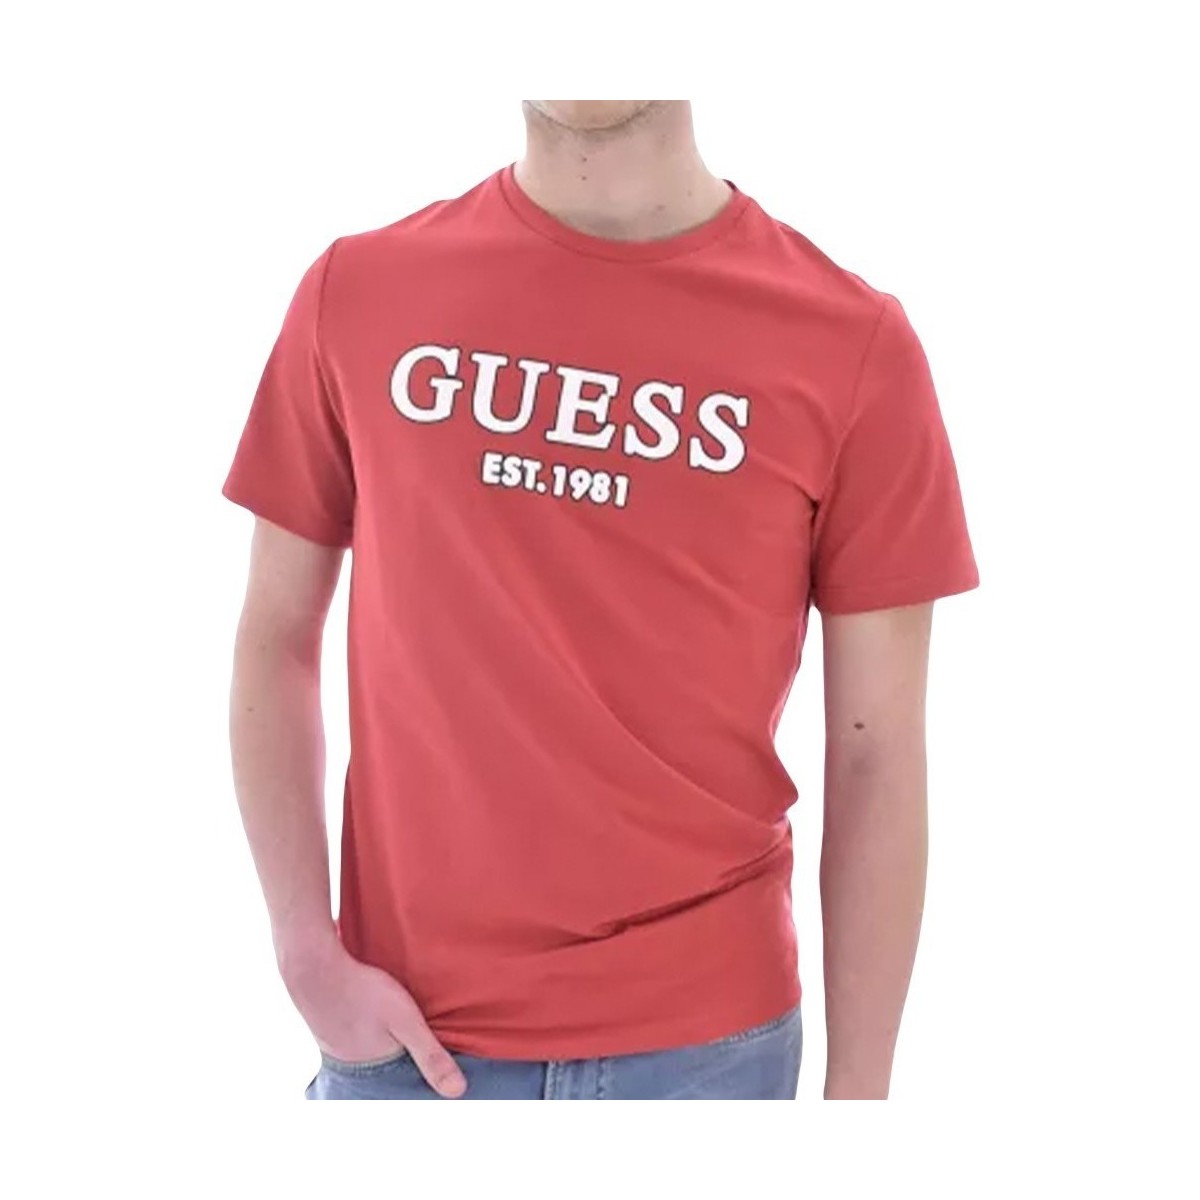 Abbigliamento Uomo T-shirt maniche corte Guess logo original Rosso